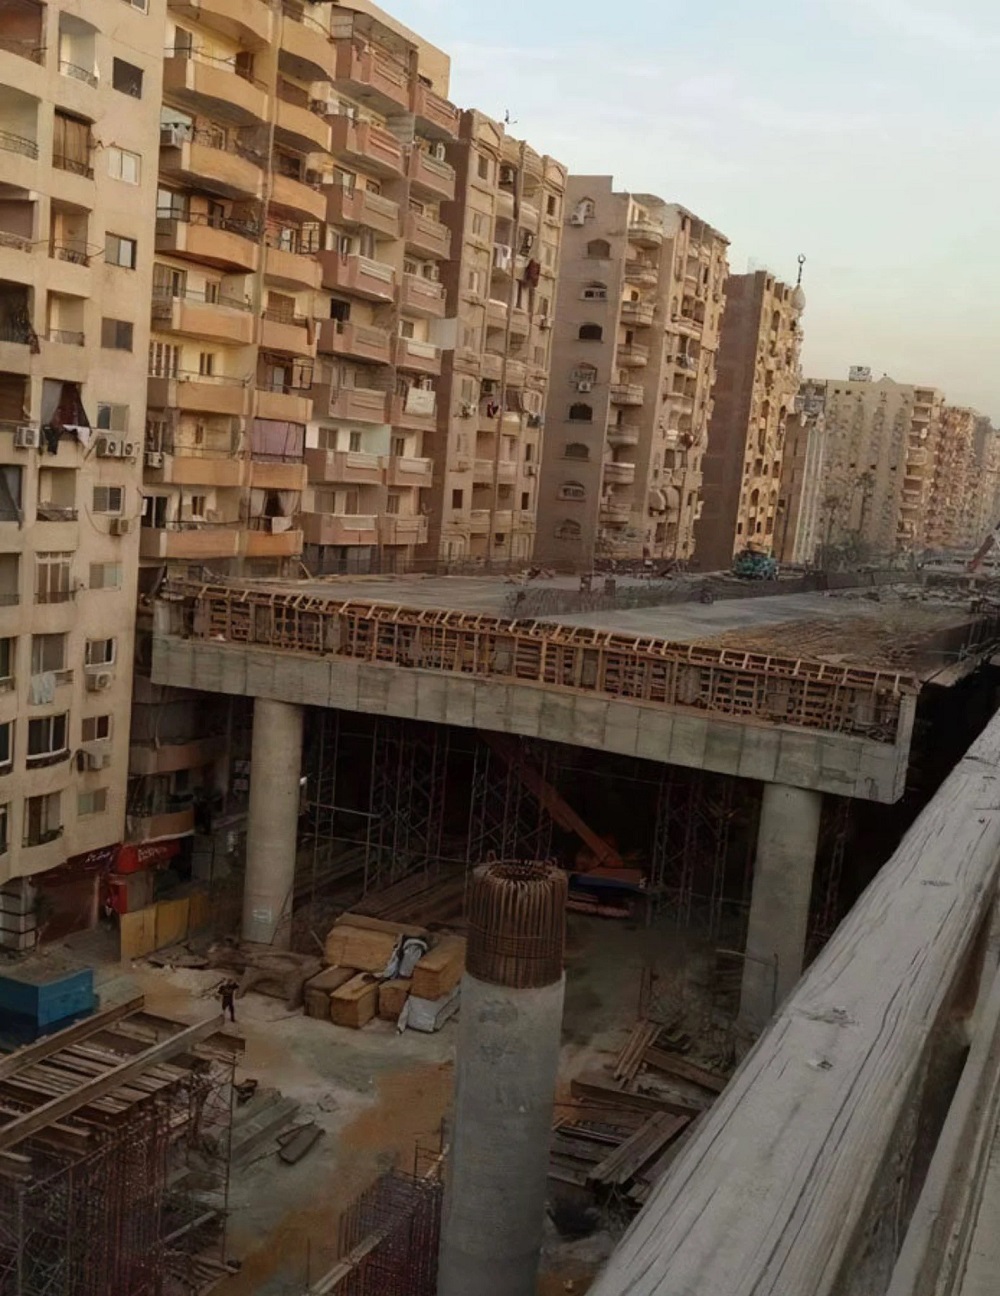 "Se vende piso en El Cairo, oportunidad, muy barato, fantásticas vistas": El gobierno egipcio construye una autopista gigante pasando por la mitad de una zona residencial